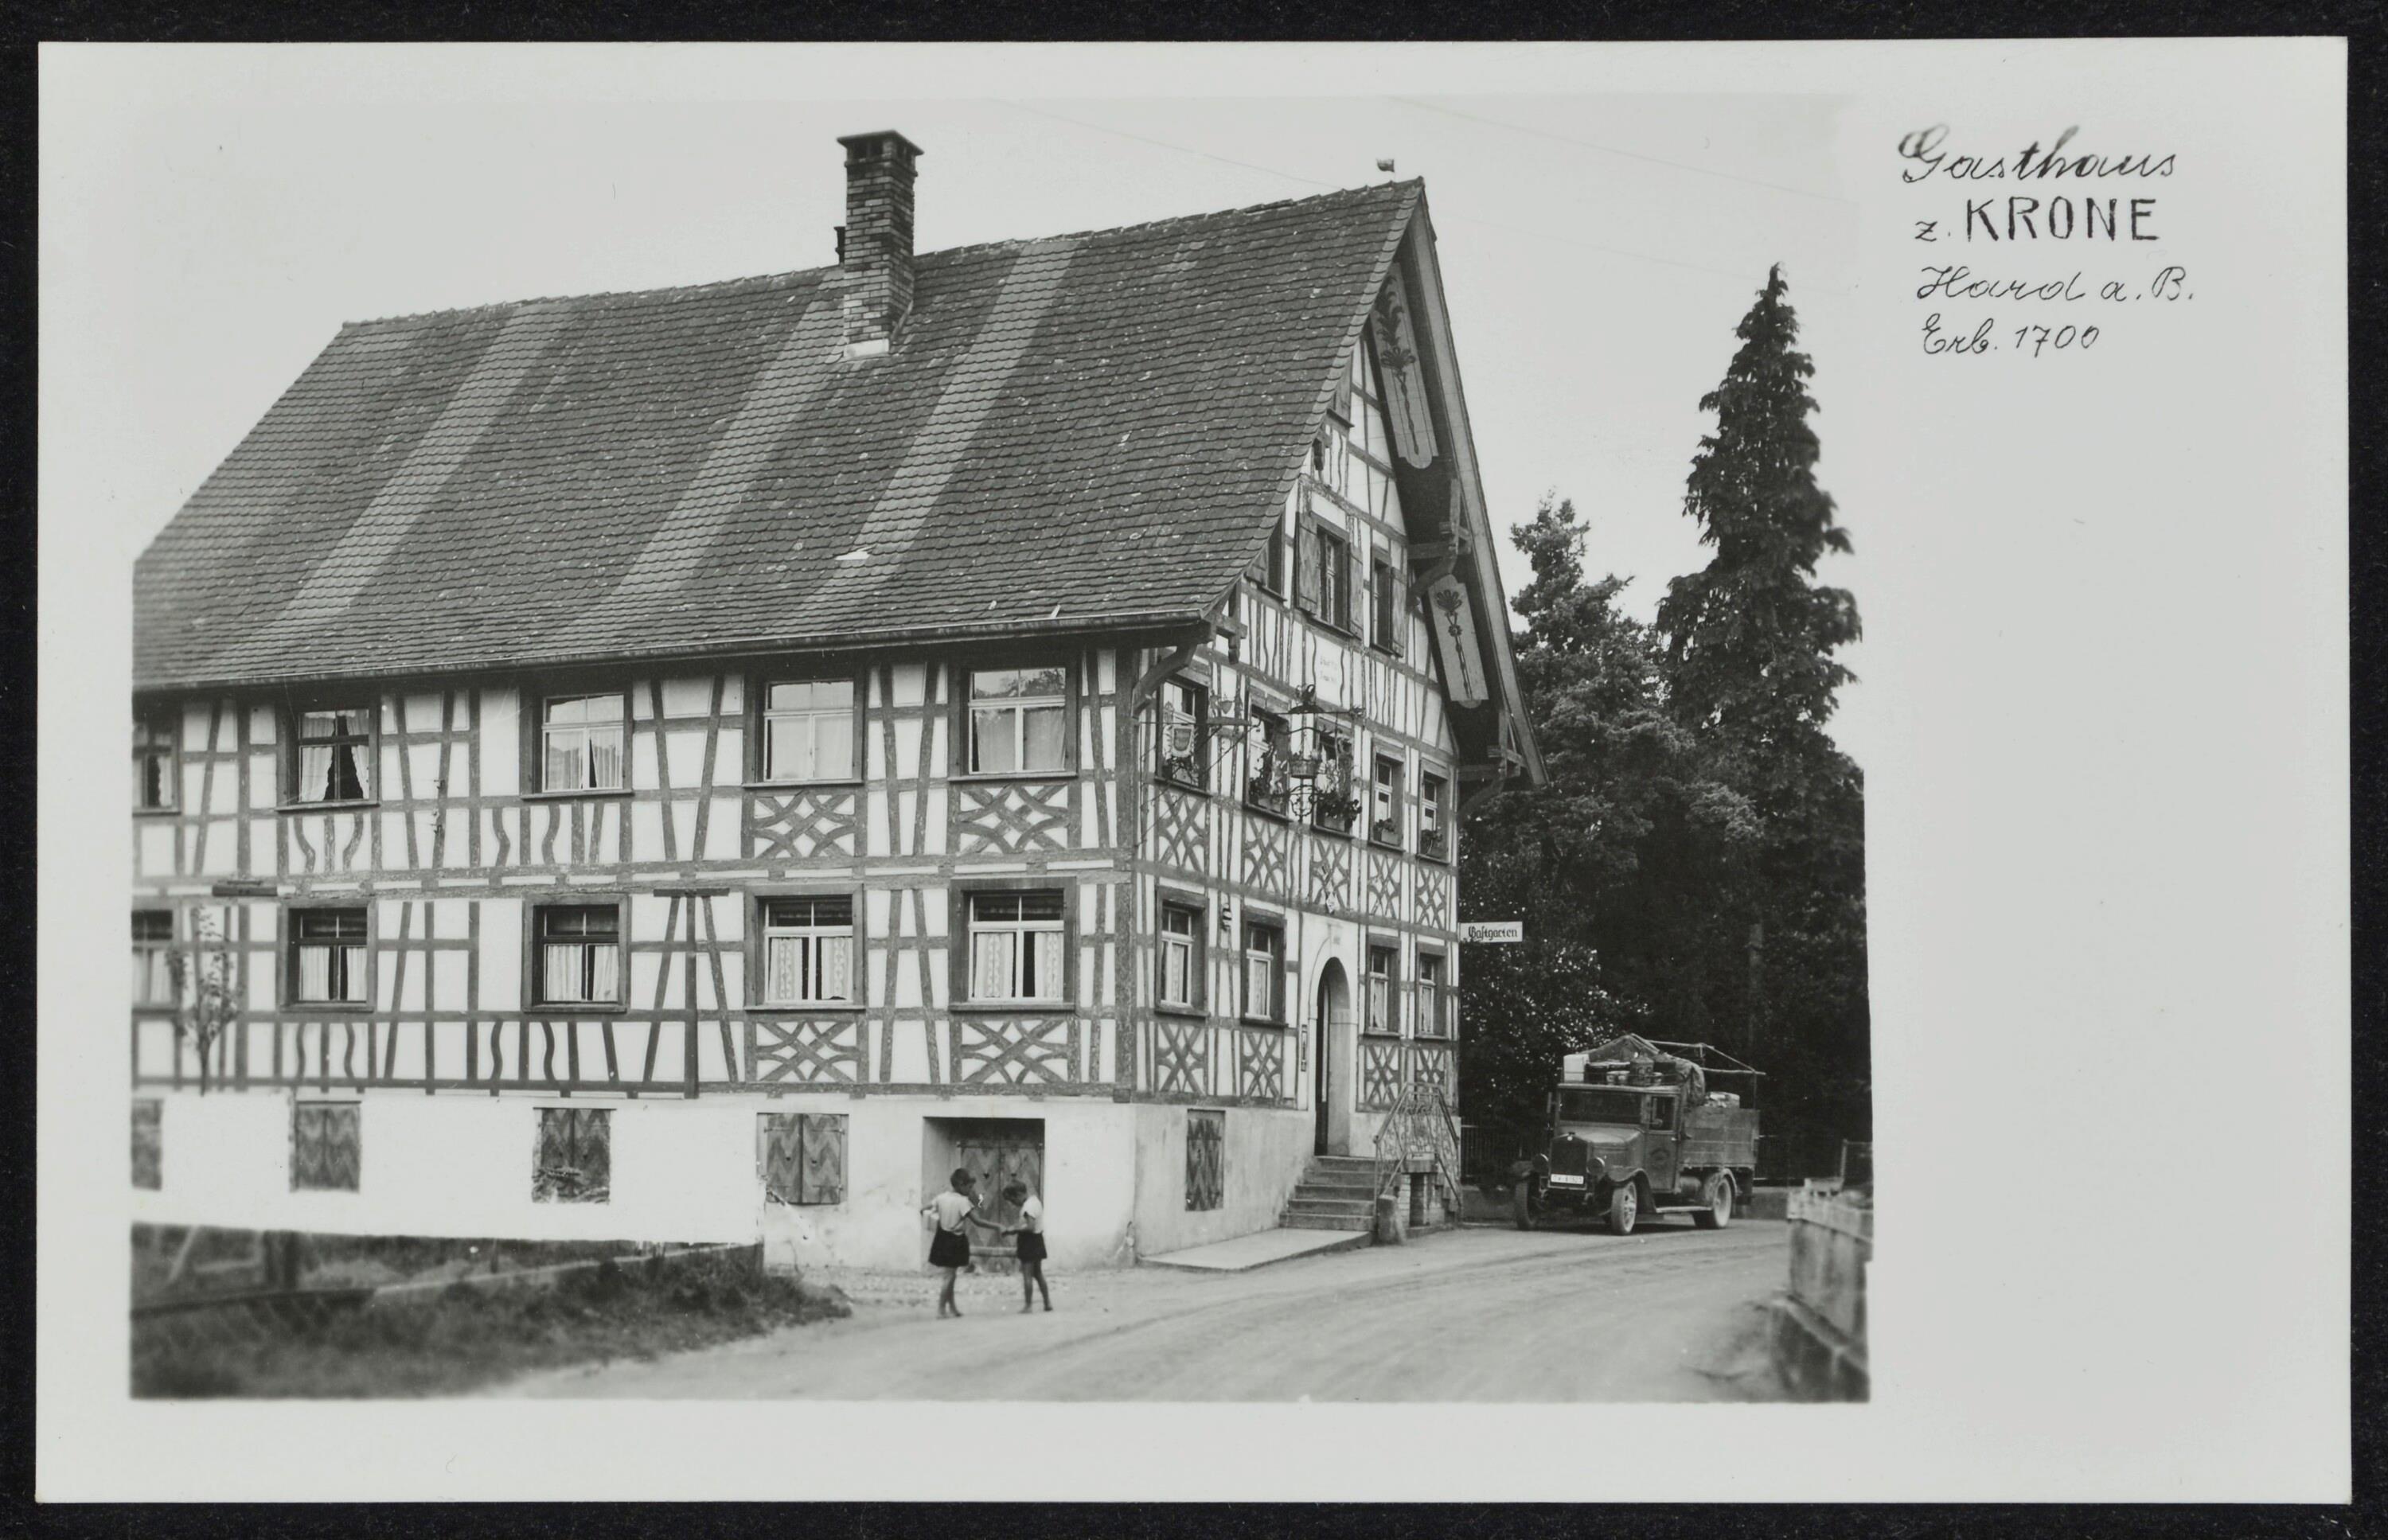 Gasthaus z. Krone Hard a. B. Erb. 1700></div>


    <hr>
    <div class=